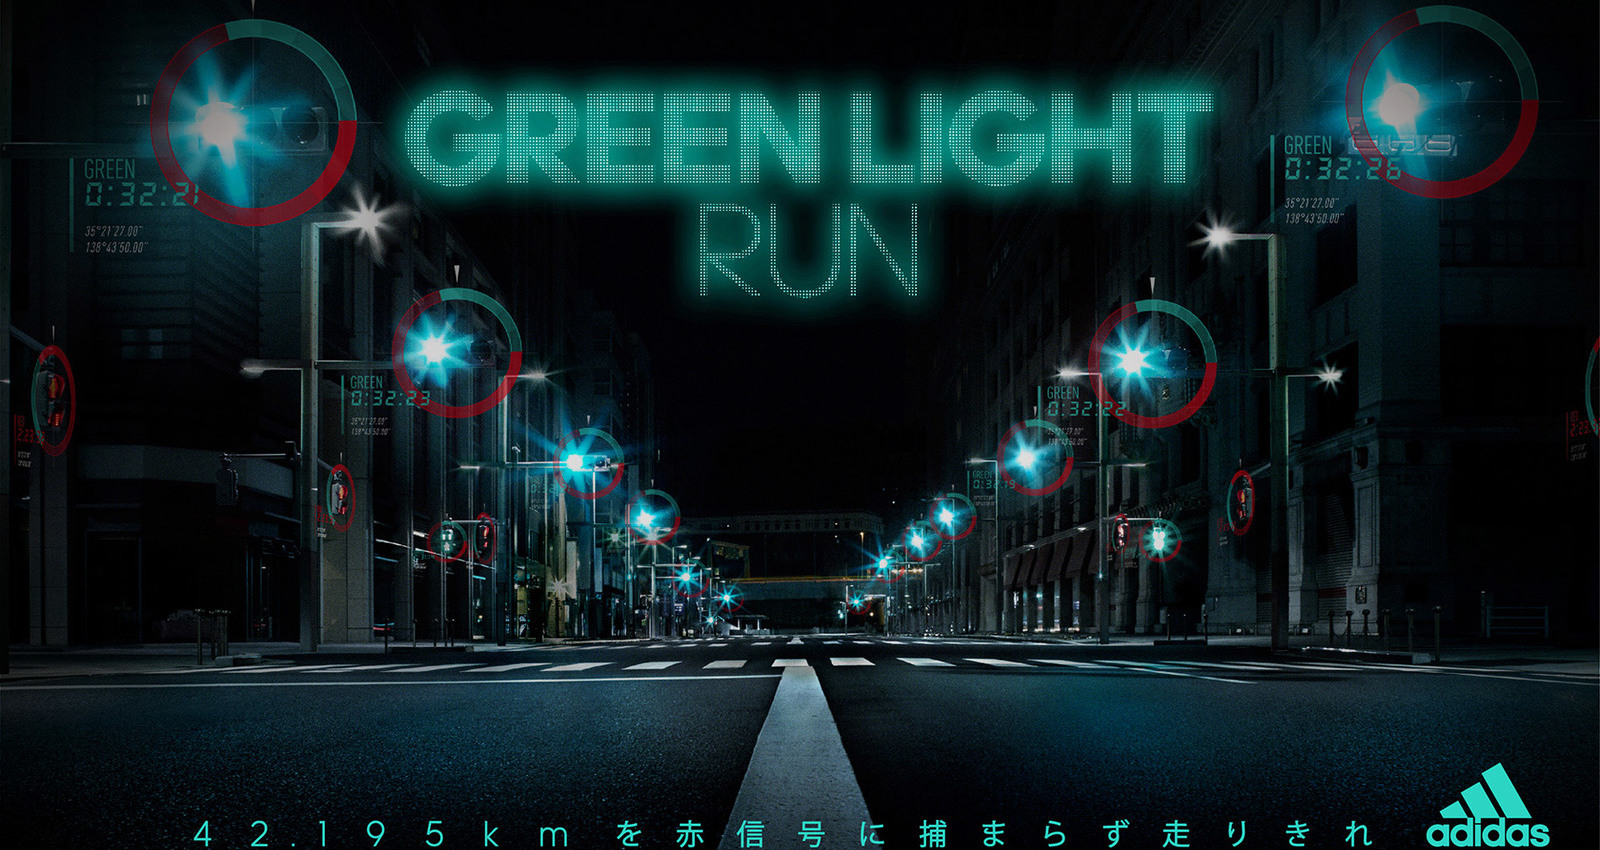 GREEN LIGHT RUN